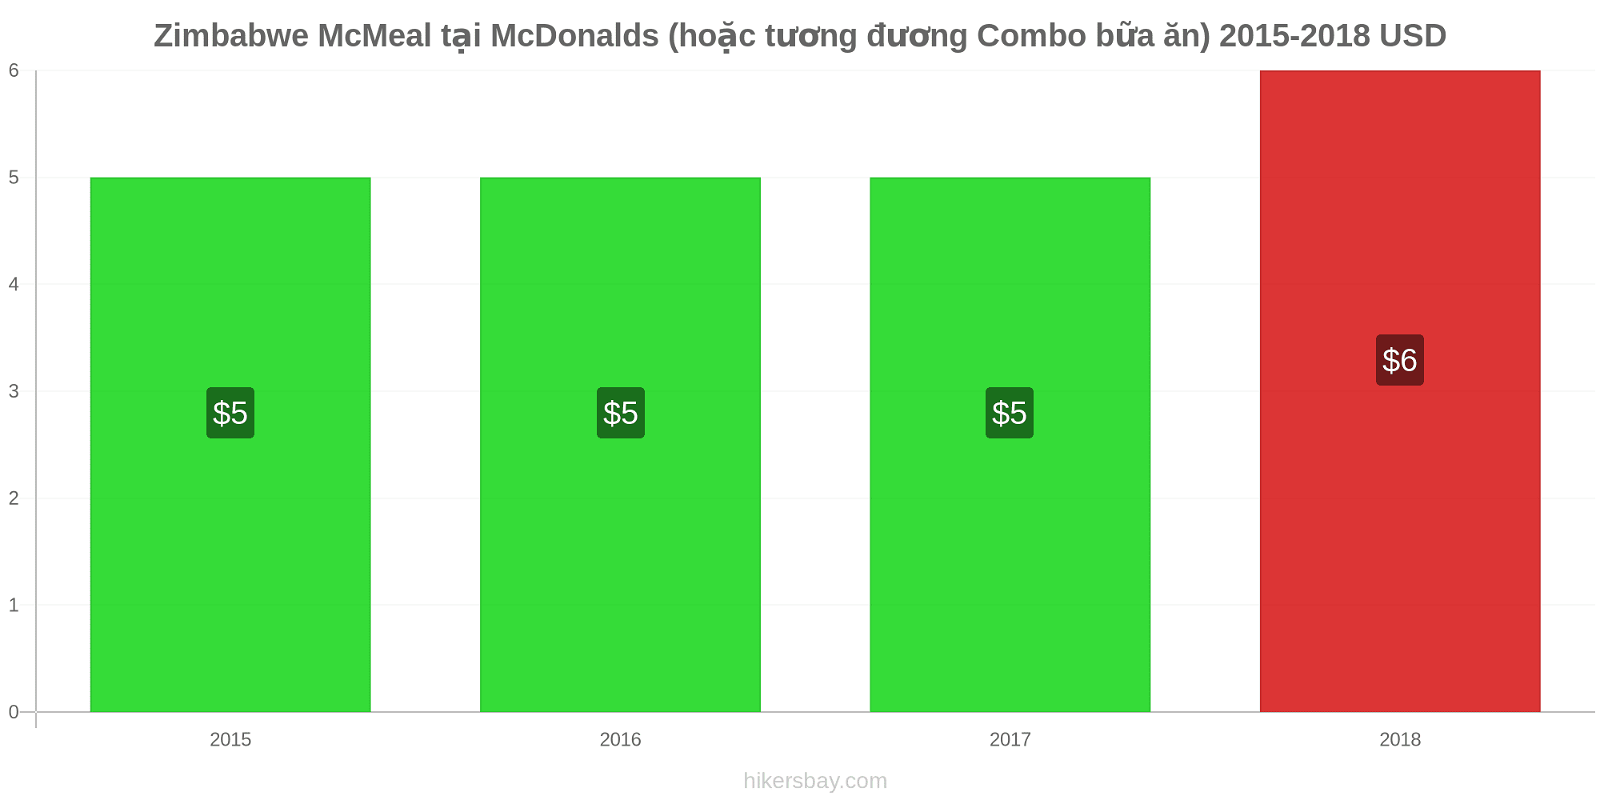 Zimbabwe thay đổi giá McMeal tại McDonalds (hoặc tương đương Combo bữa ăn) hikersbay.com